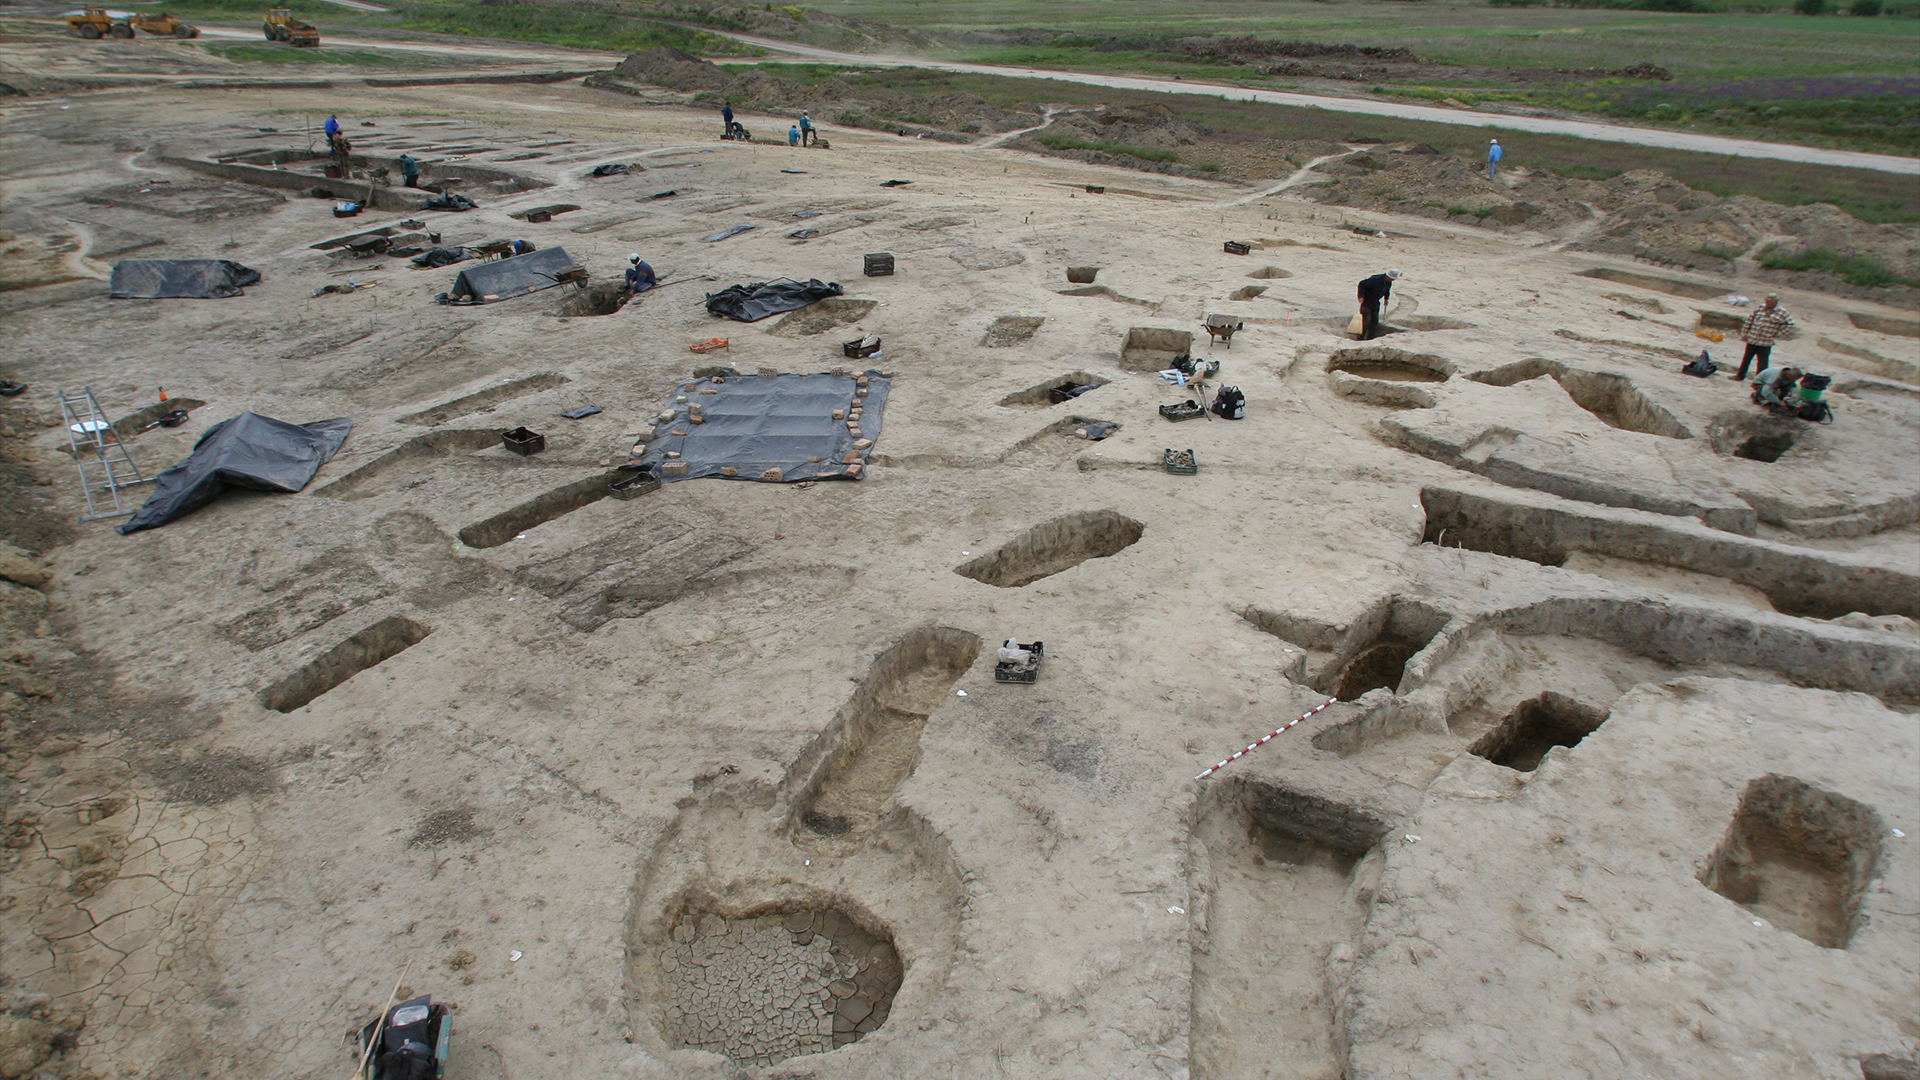 Fotografía de paisaje del sitio de excavación, que muestra agujeros de diferentes formas excavados en el campo de tierra apisonada.